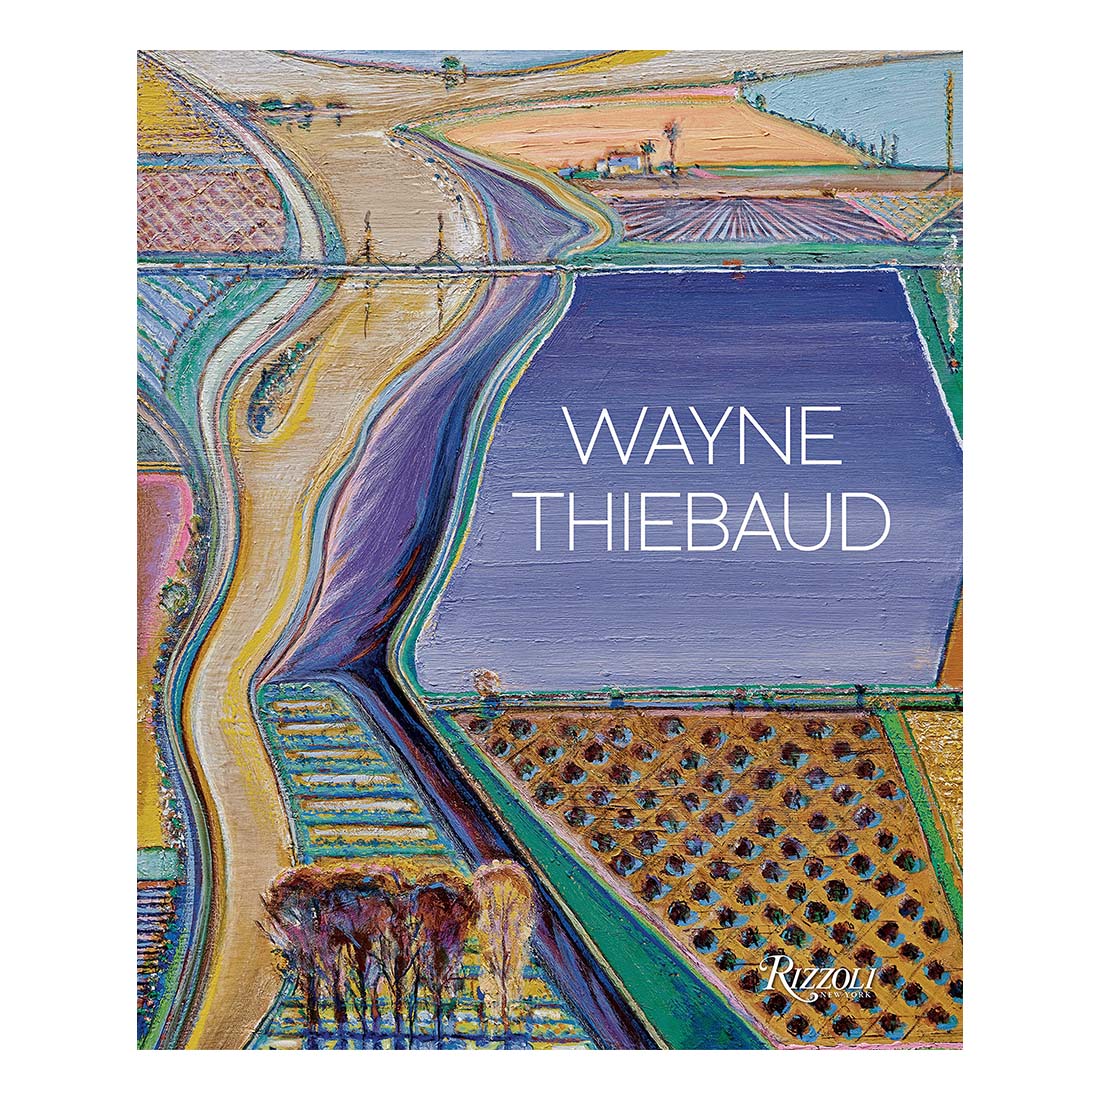 Wayne Thiebaud (Updated Edition)